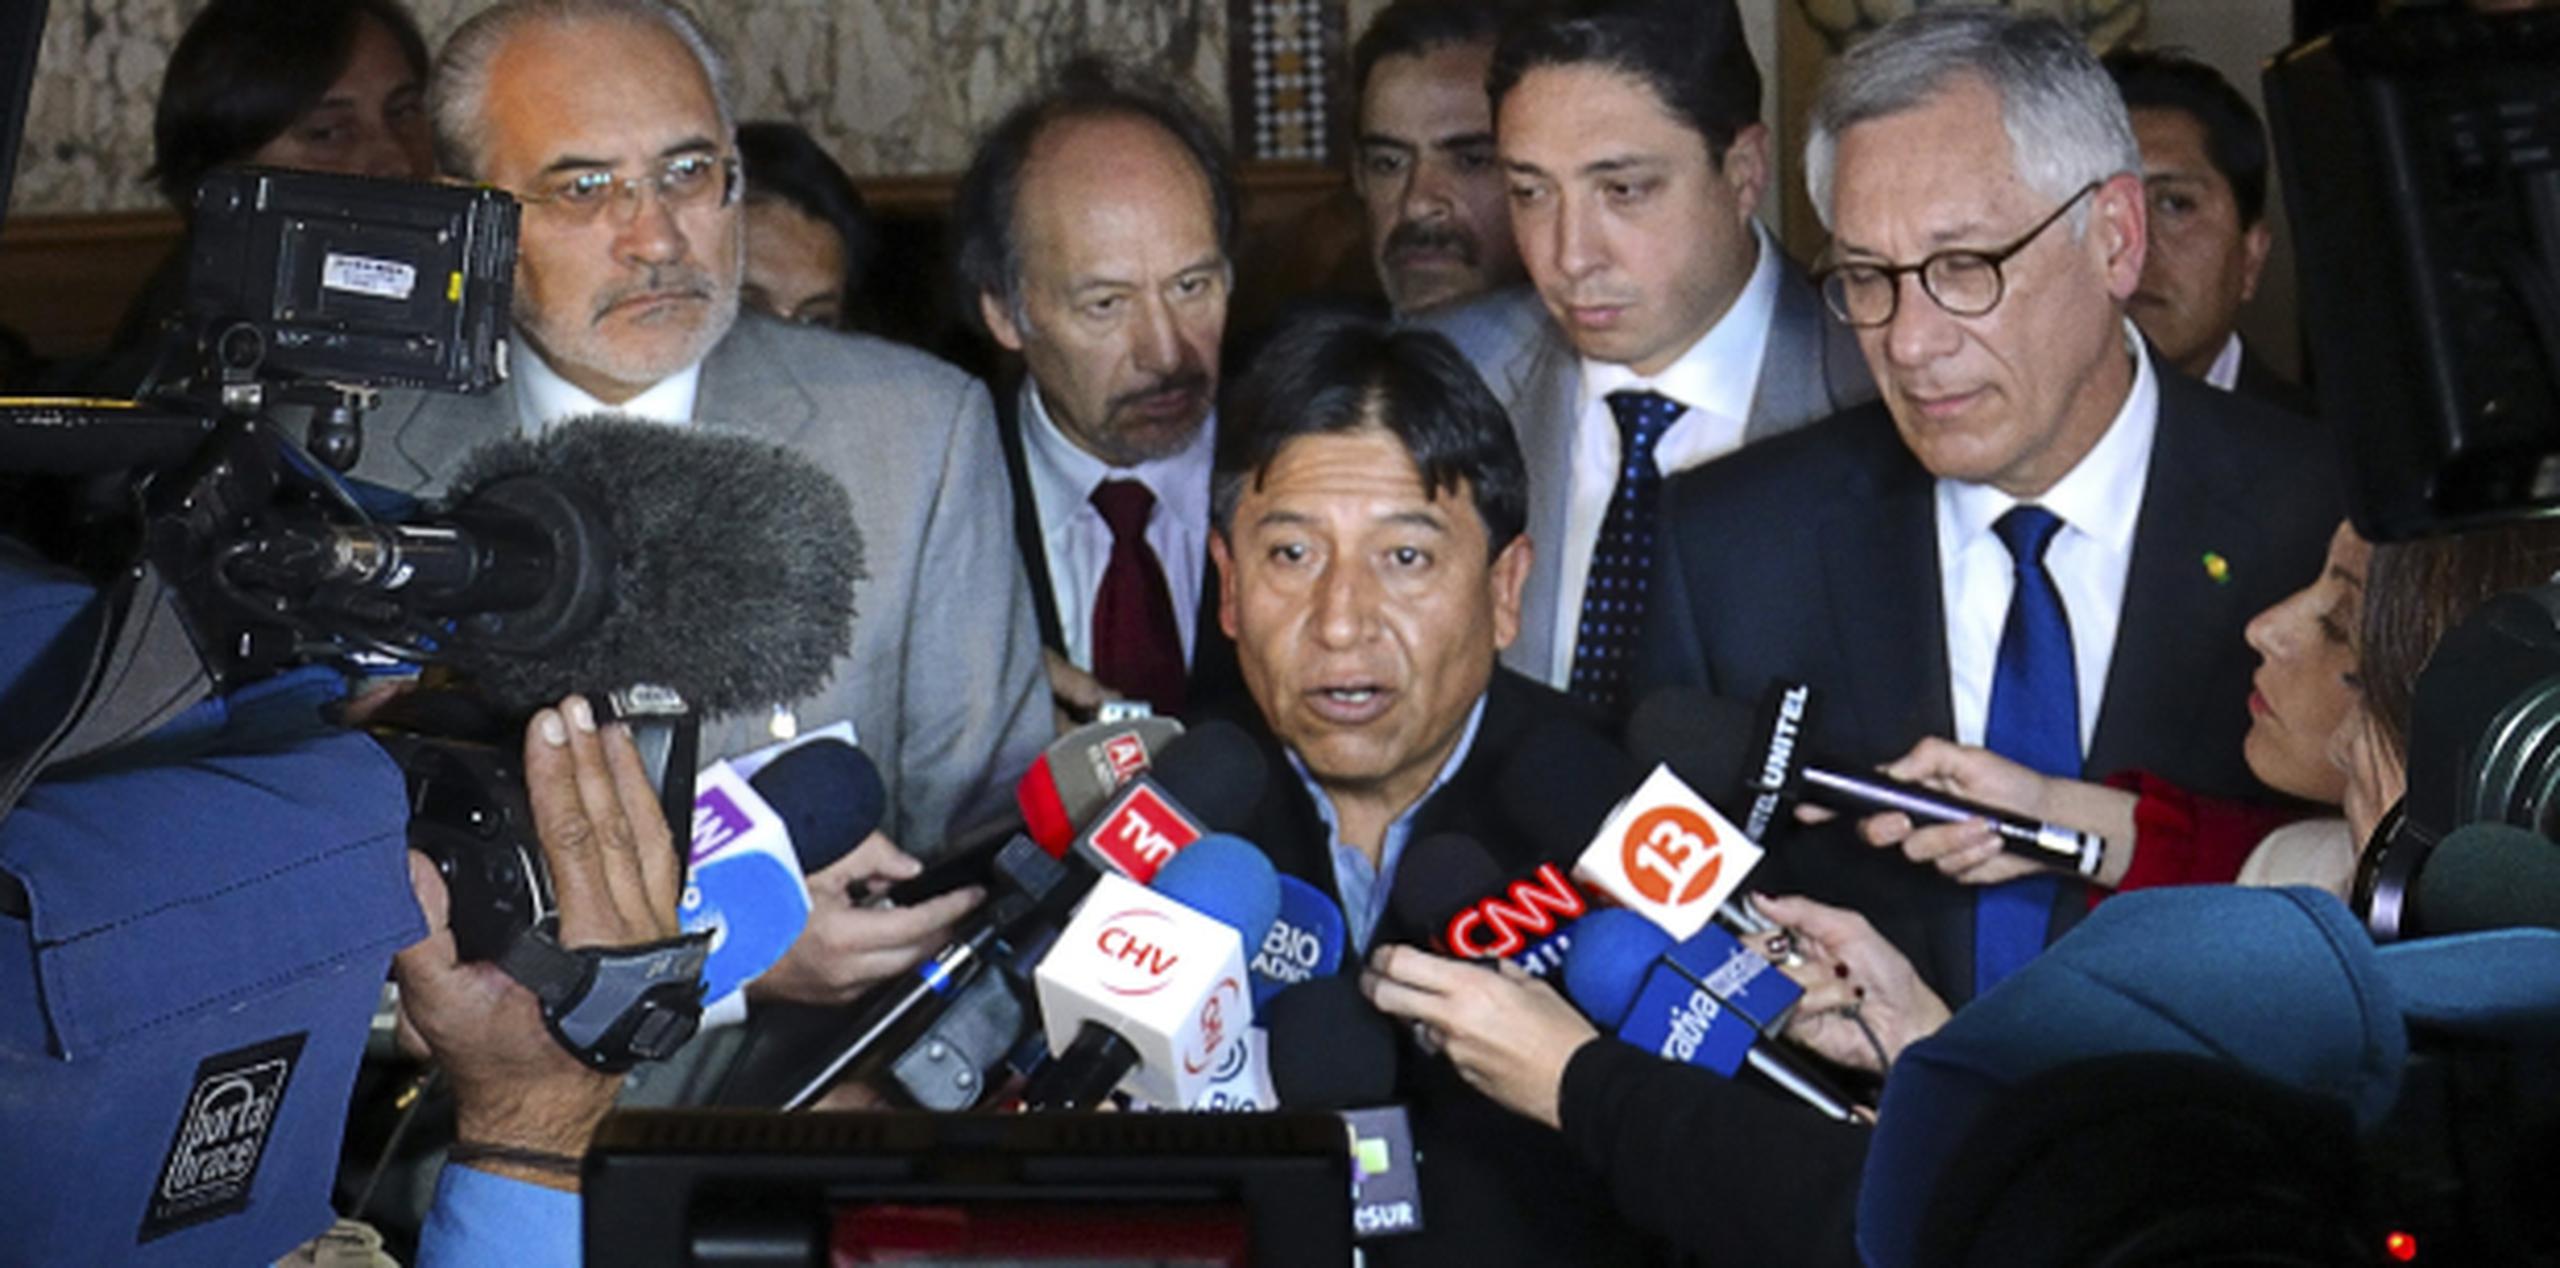 El canciller de Bolivia David Choquehuanca, al centro, atiende a la prensa tras los alegatos orales ante la Corte Internacional en el caso que enfrenta a Bolivia y Chile por la salida al océano Pacífico que pide La Paz. (EFE)